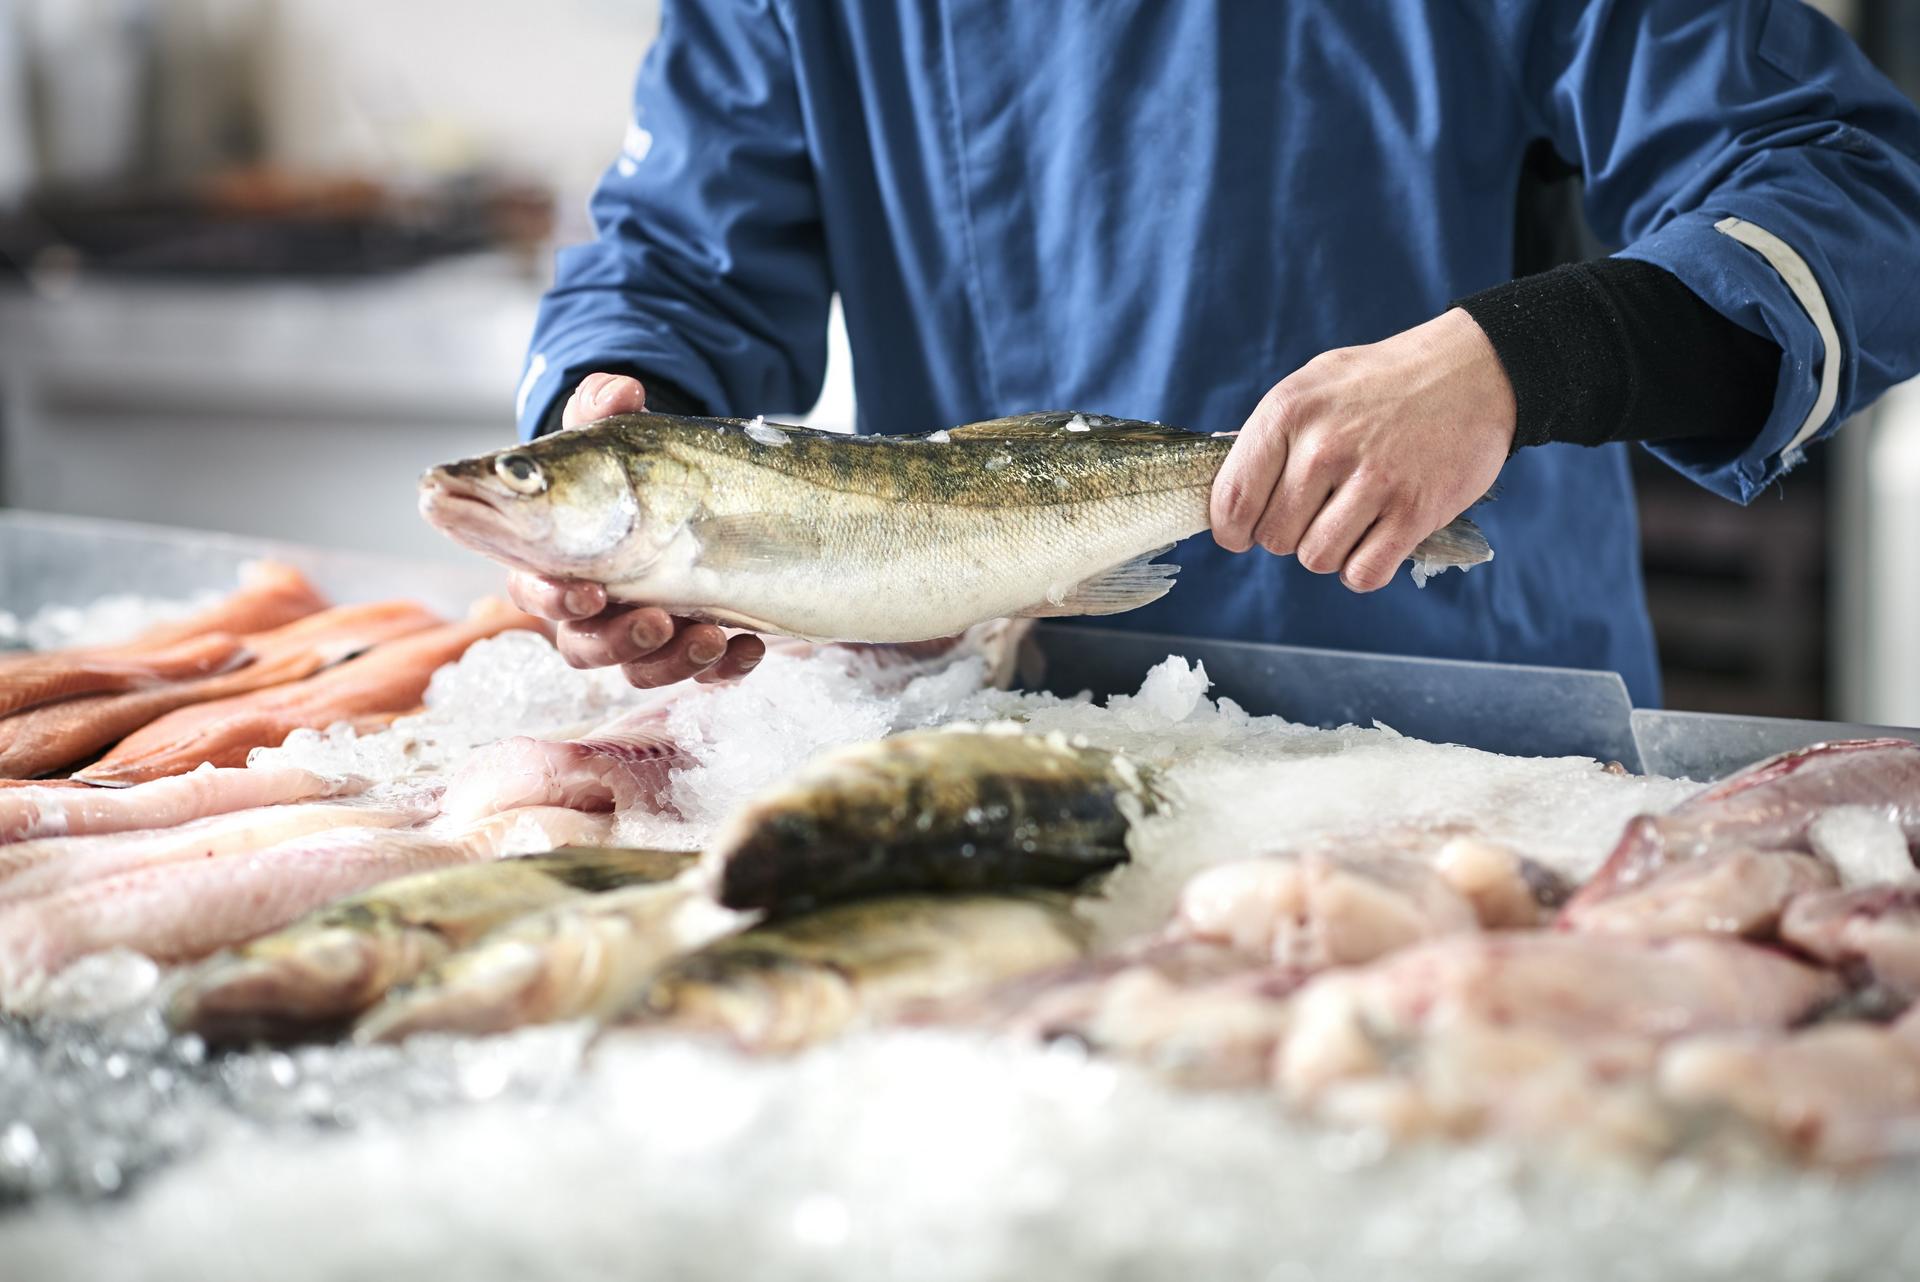 Τα ψάρια είναι εξαιρετική πηγή ωμέγα 3 λιπαρών οξέων, όπως το EPA και το DHA.